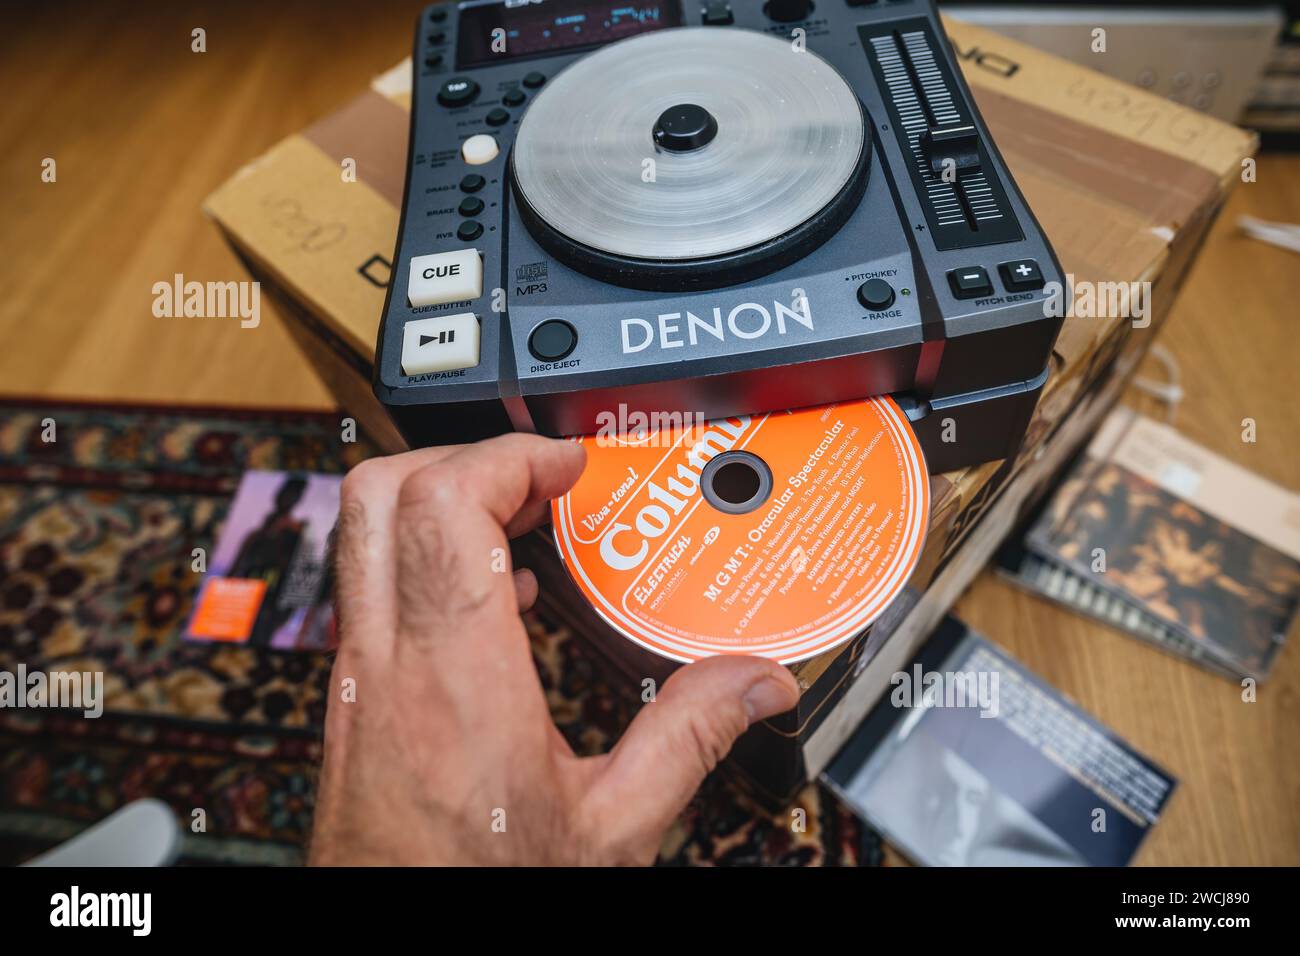 Paris, France - Oct 24, 2023:Paris, France - Oct 24, 2023 : Regardez le CD de MGMT Oracular Spectacular Spectacular est inséré en douceur dans l'équipement de mixage Denon DJ, donnant vie à la musique pour votre fête. Banque D'Images